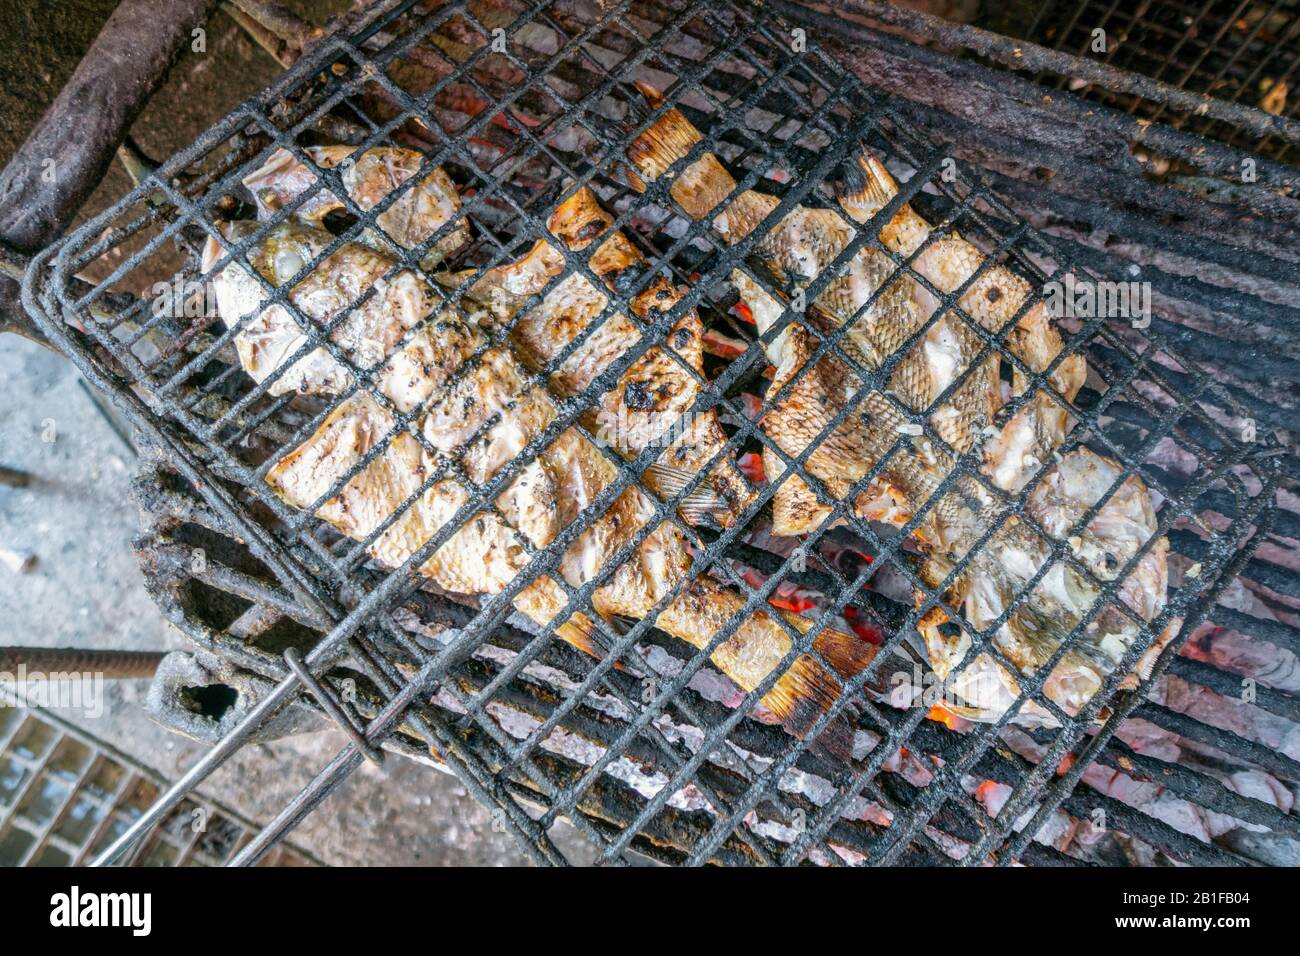 Deux poissons barbecue au charbon de bois prêts à manger, Afrique Banque D'Images